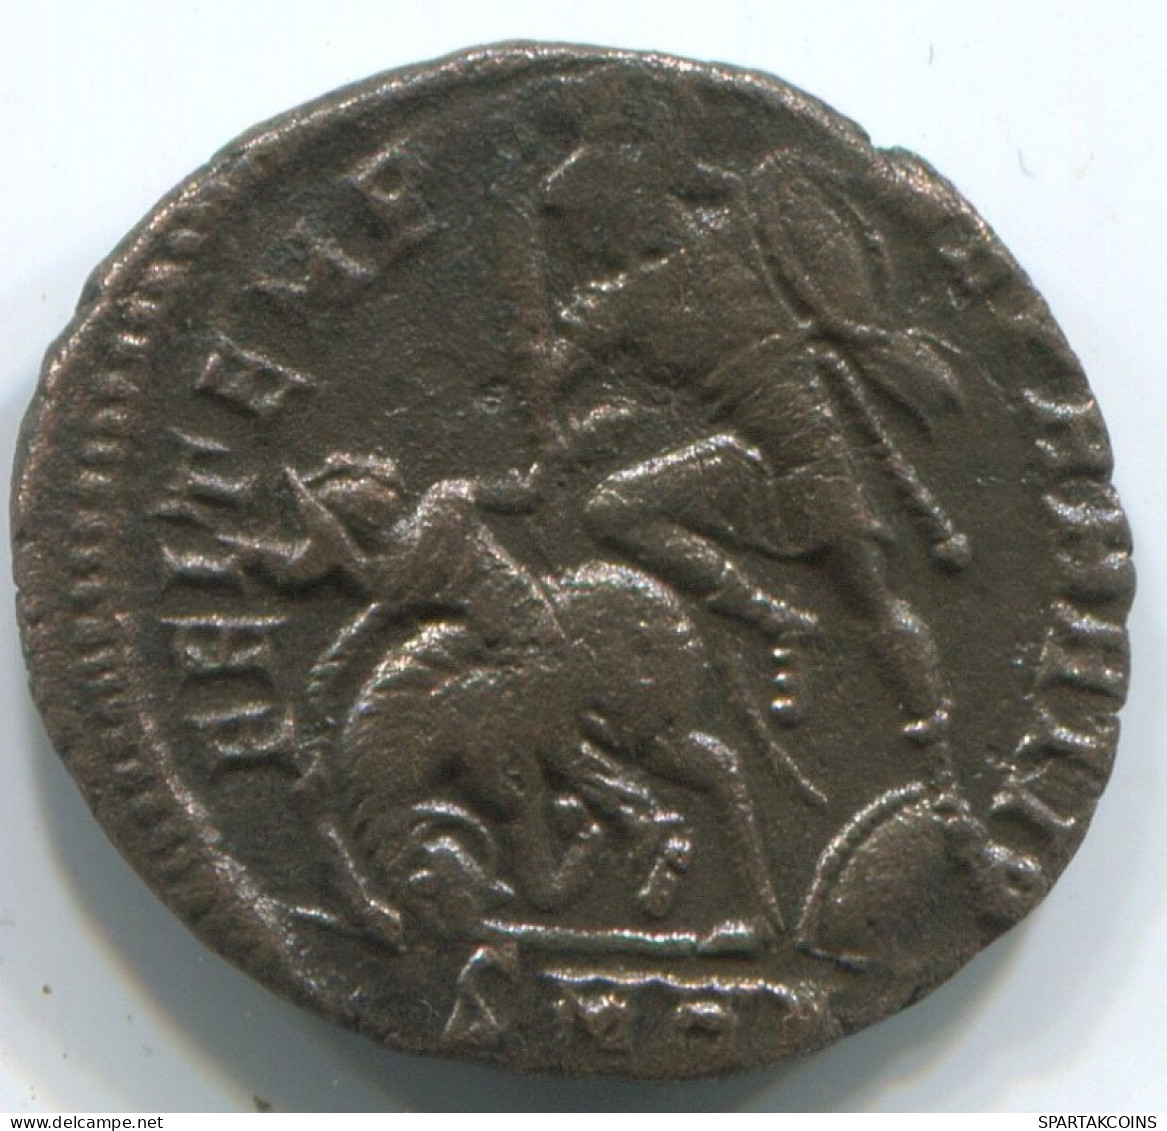 LATE ROMAN EMPIRE Pièce Antique Authentique Roman Pièce 1.7g/19mm #ANT2229.14.F.A - La Fin De L'Empire (363-476)